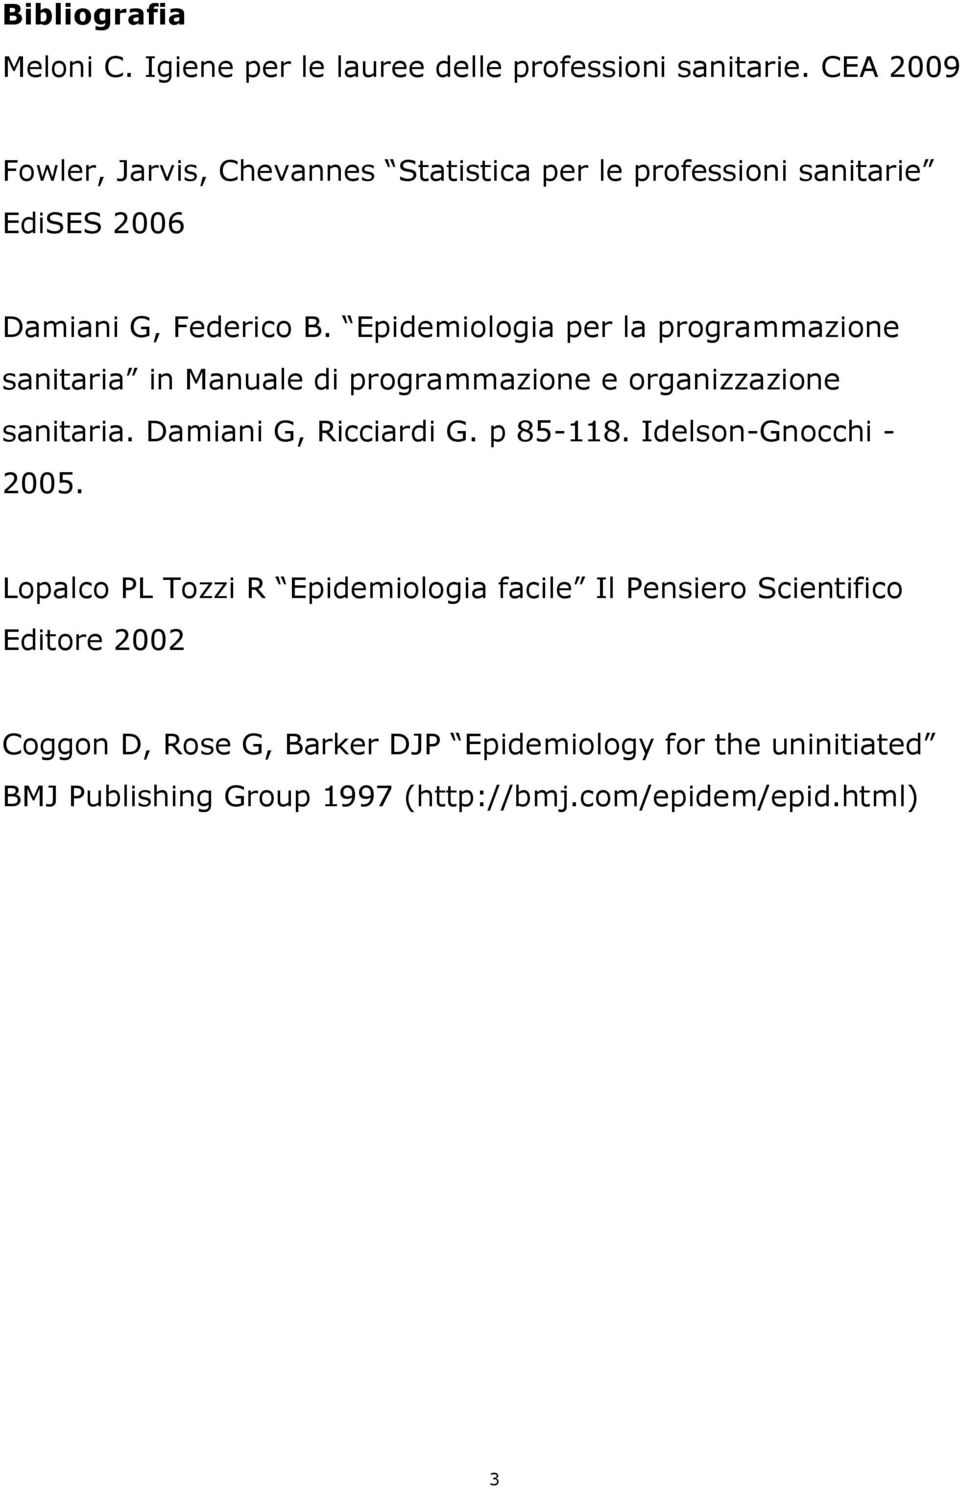 Epidemiologia per la programmazione sanitaria in Manuale di programmazione e organizzazione sanitaria. Damiani G, Ricciardi G. p 85-118.